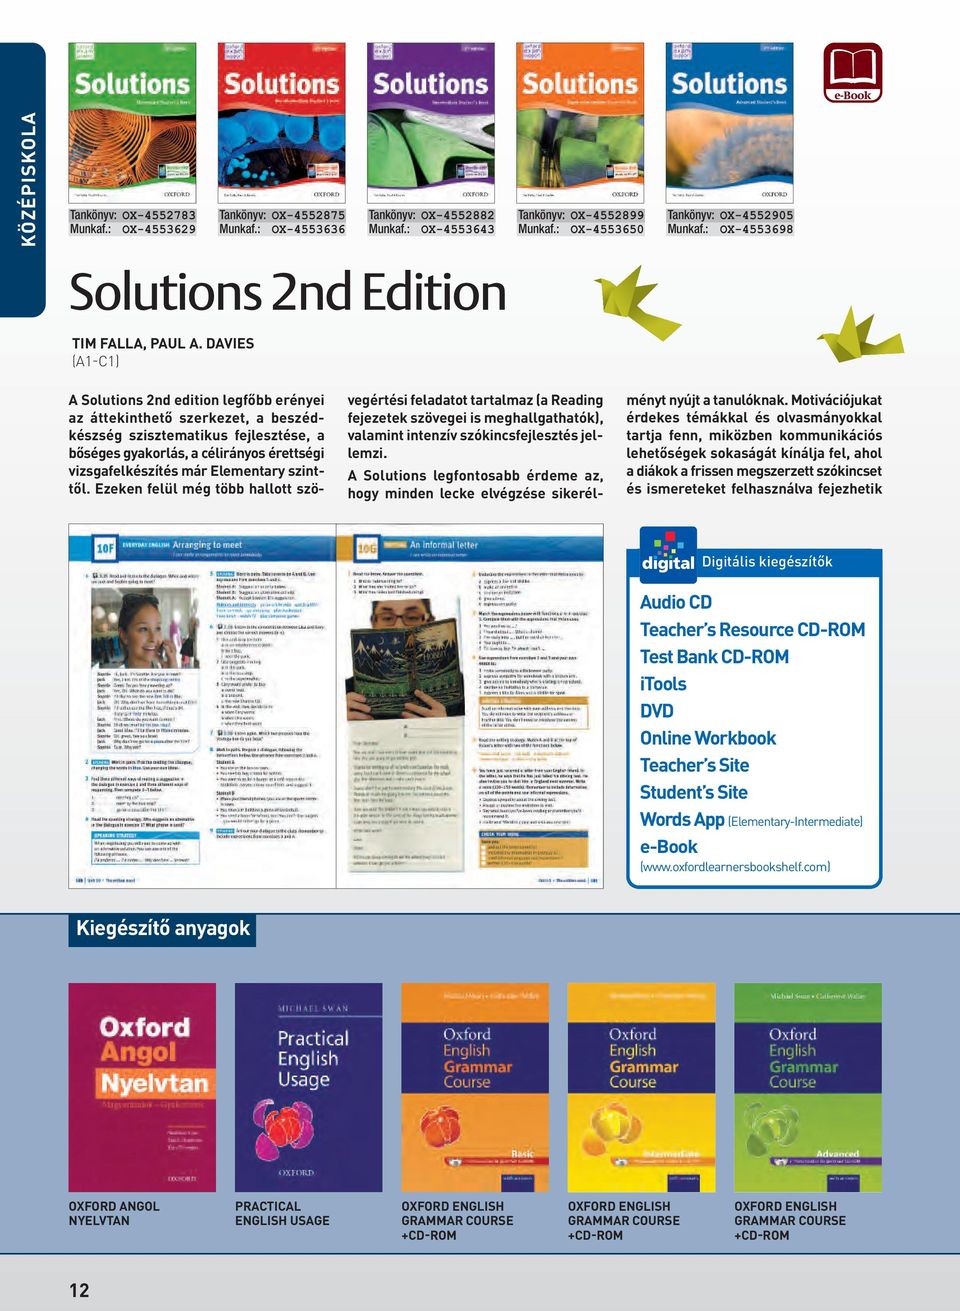 DAVIES (A1-C1) A Solutions 2nd edition legfôbb erényei az áttekinthetô szerkezet, a beszédkészség szisztematikus fejlesztése, a bôséges gyakorlás, a célirányos érettségi vizsgafelkészítés már